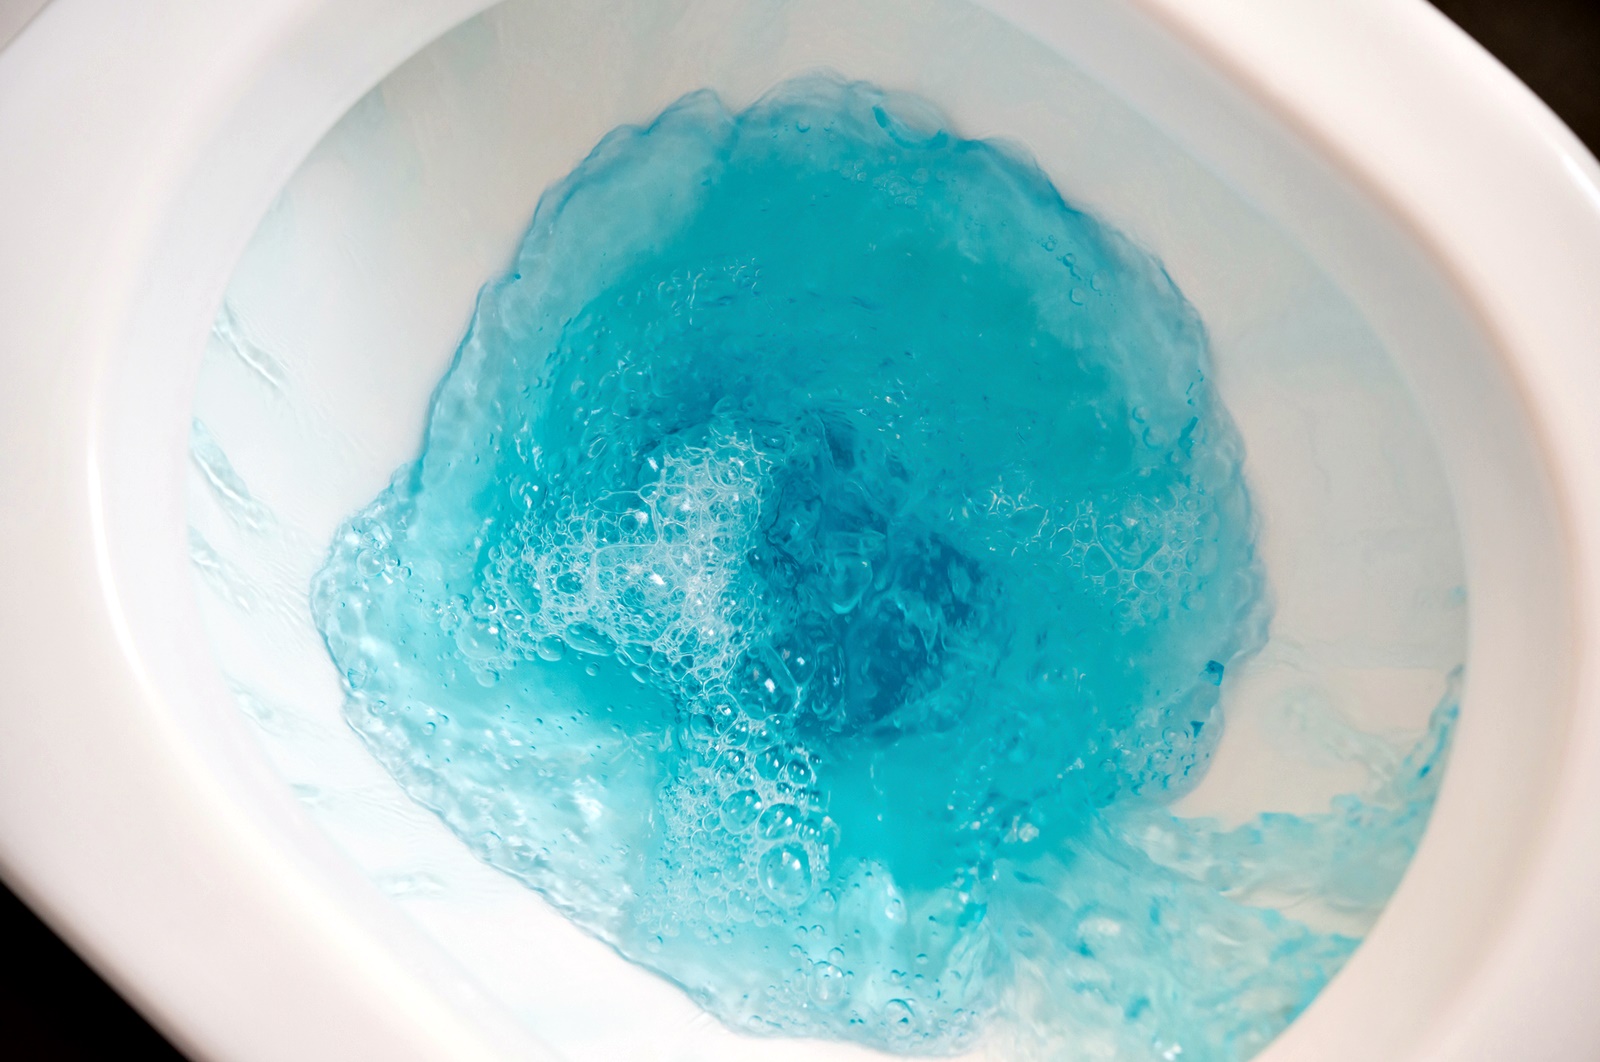 Син или зелен цвят<br />
Звучи невероятно водата в тоалетната чиния да се оцвети в синьо или зелено, след като сме уринирали, освен ако не сме сложили препарат за почистване с мирис на океан или борче, но е съвсем възможно. Този феномен в тоалетната може да се появи вследствие на боя в храната или пък генетично заболяване. За да се подсигурите, че не е второто, по-добре отново говорете с лекар.